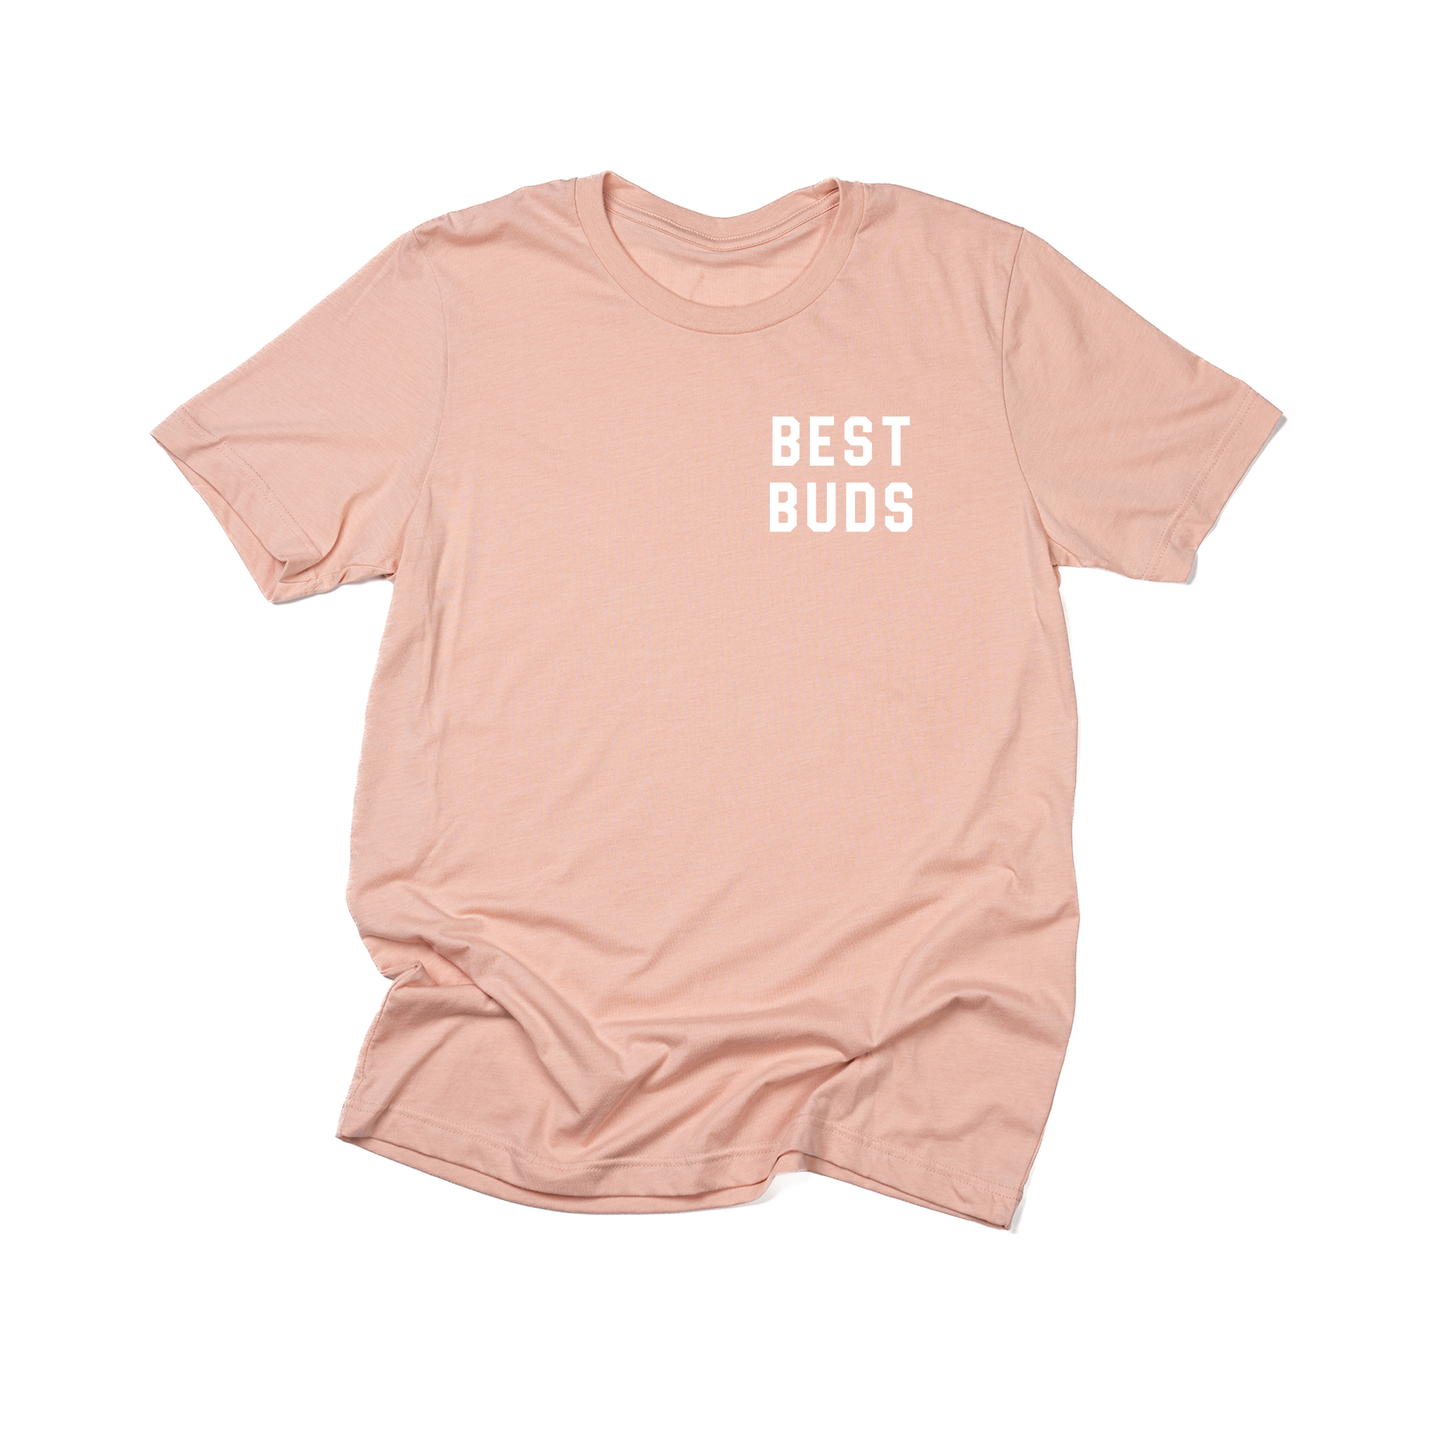 Best Buds (Pocket, White) - Tee (Peach)